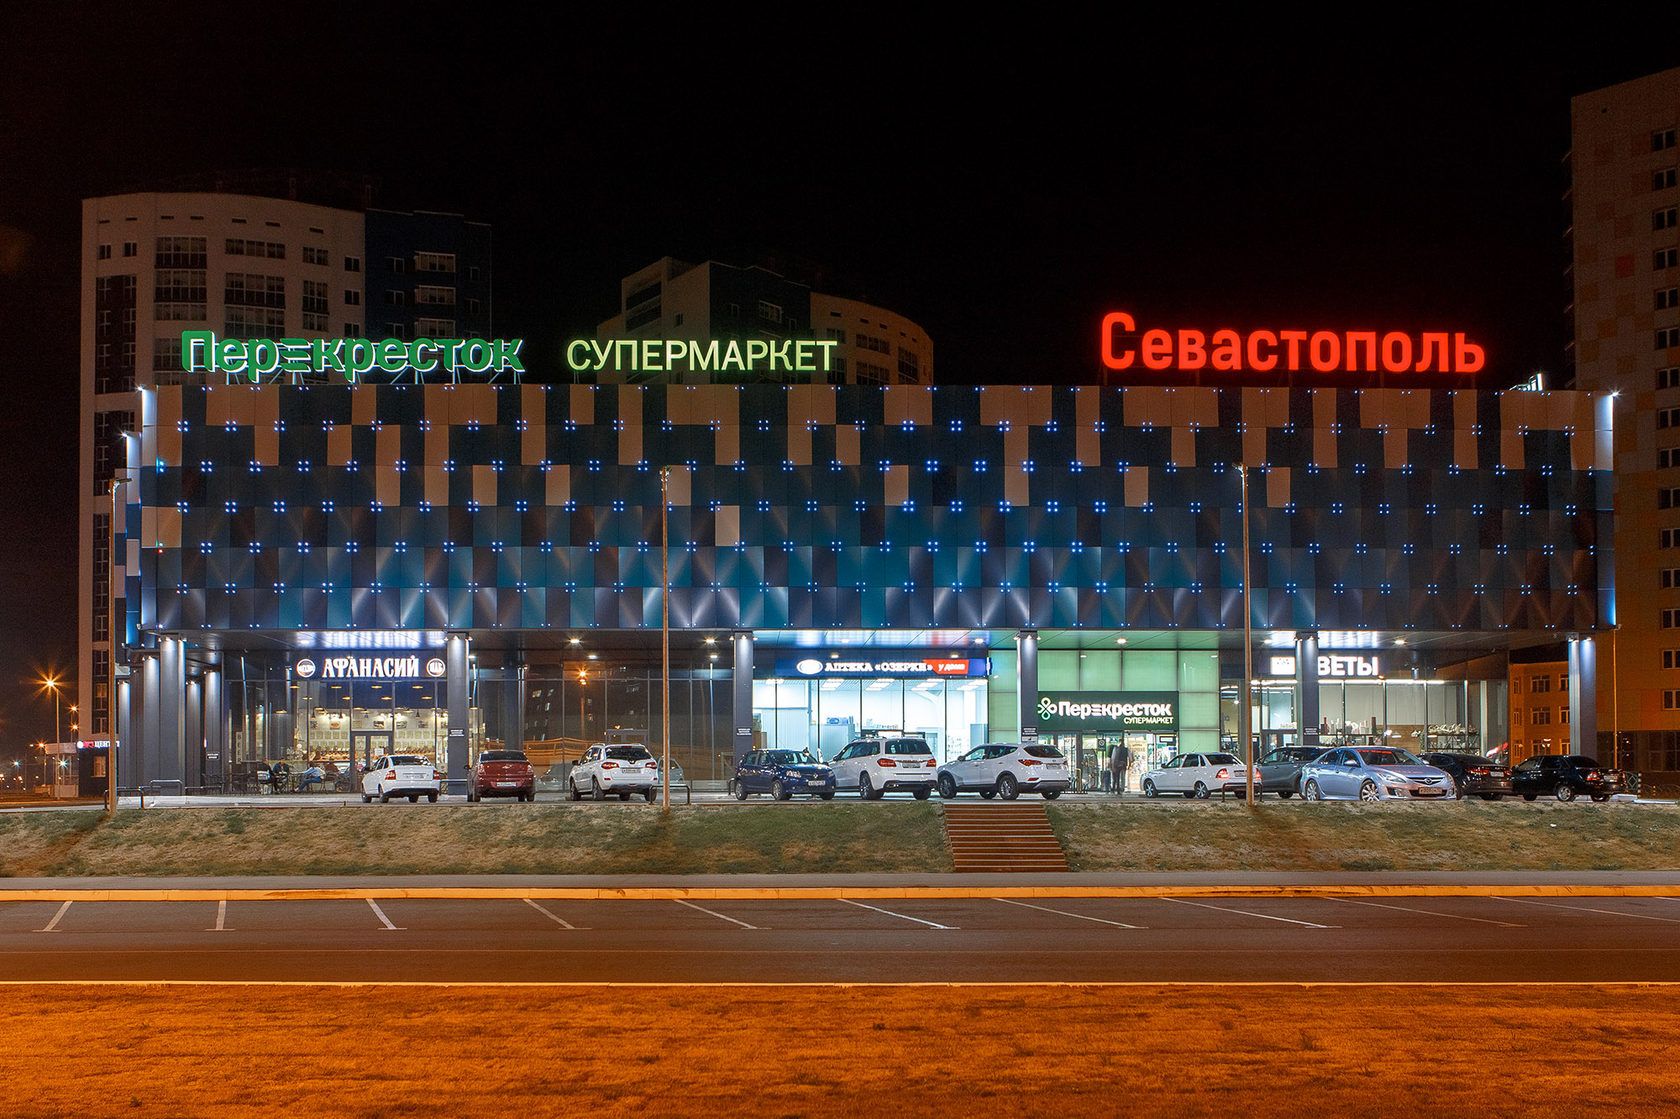 «Севастополь» - освещение торгового центра, Саранск, 2017